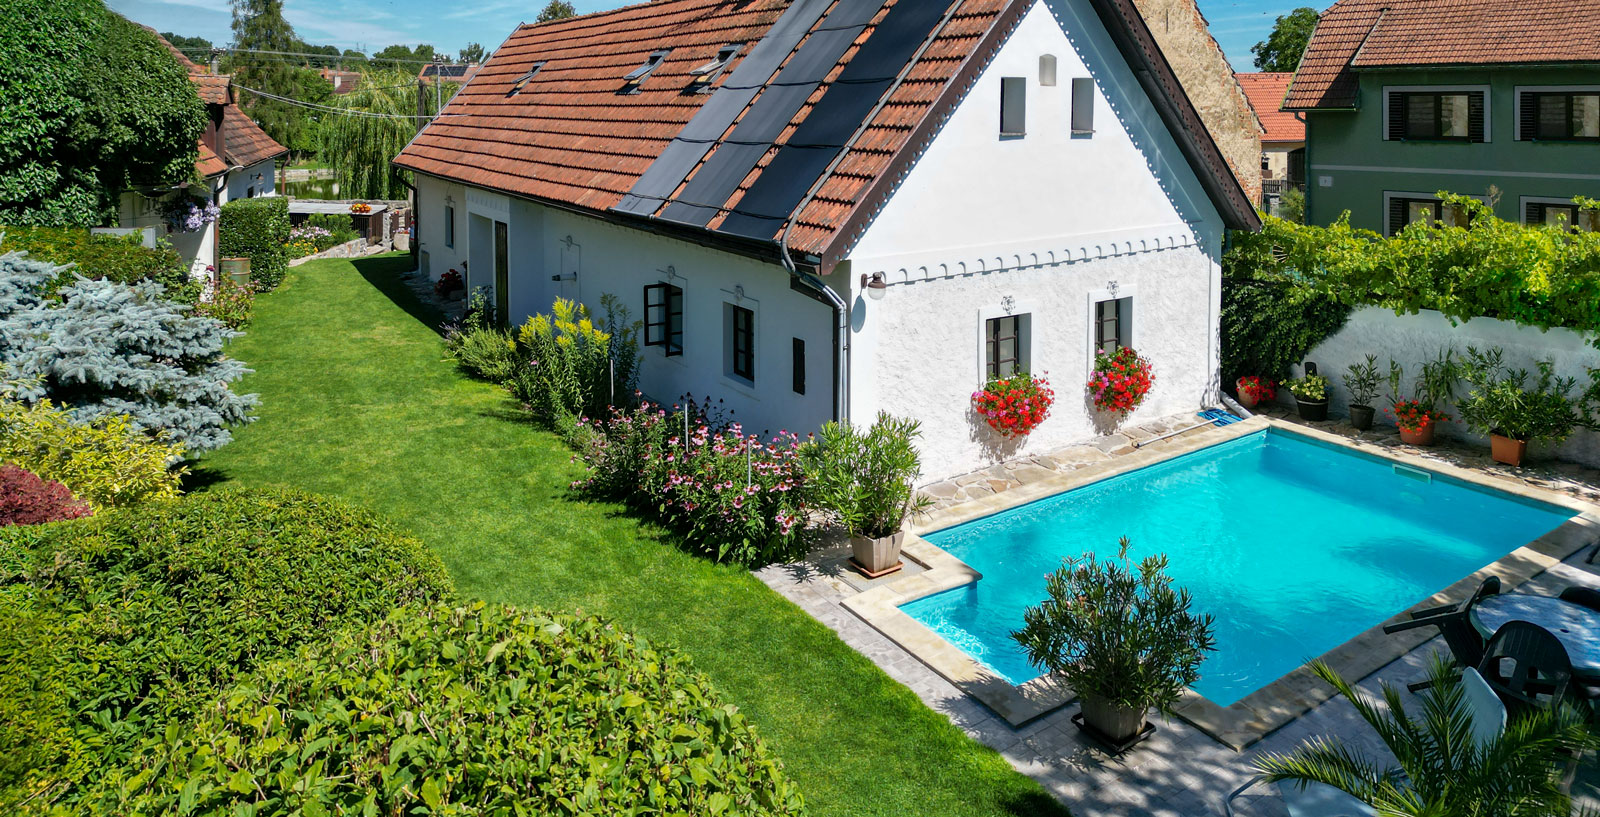 Jihočeská chalupa ubytování s bazénem k pronájmu jižní Čechy